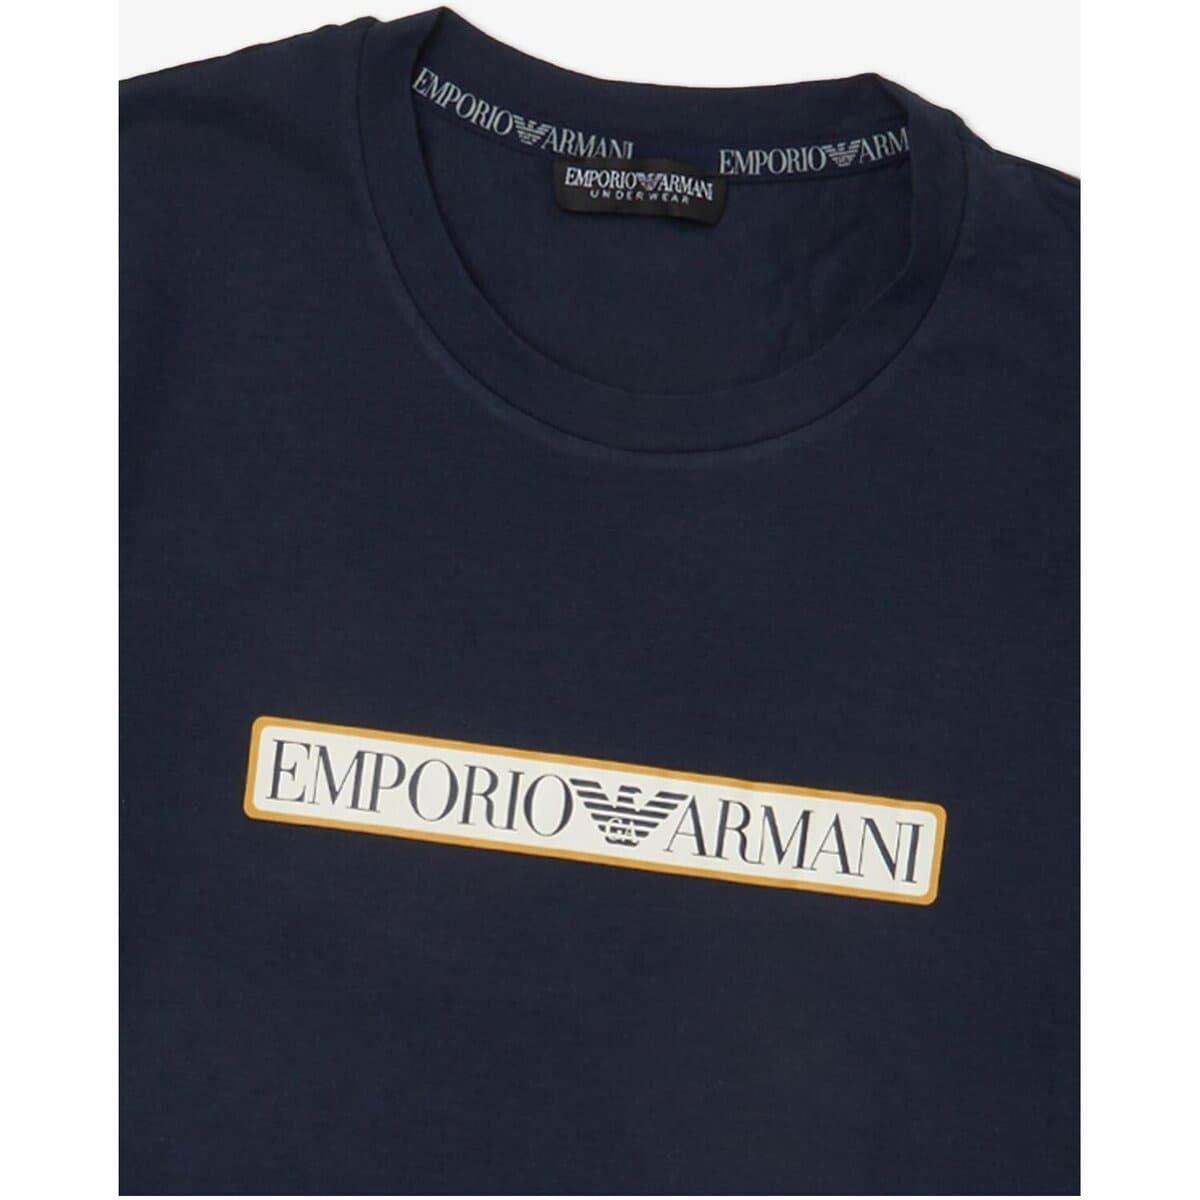 Camiseta Emporio Armani 111035 3f517 00135 marino - Imagen 2